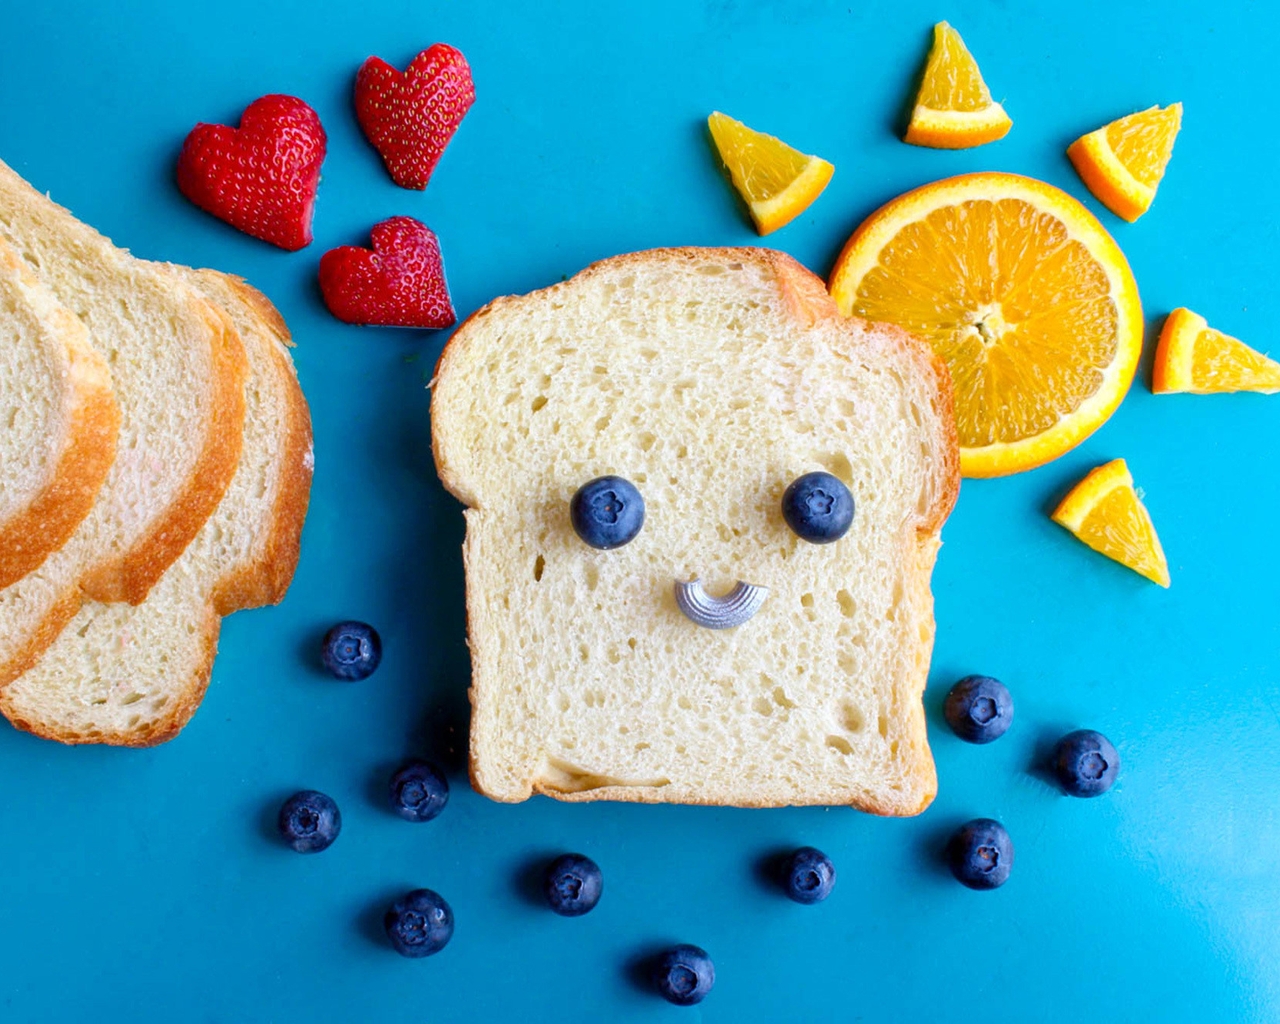 Картинка: Хлеб, черника, клубника, ягоды, апельсин, макаронина, солнце, мордочка, улыбка, настроение, голубой фон